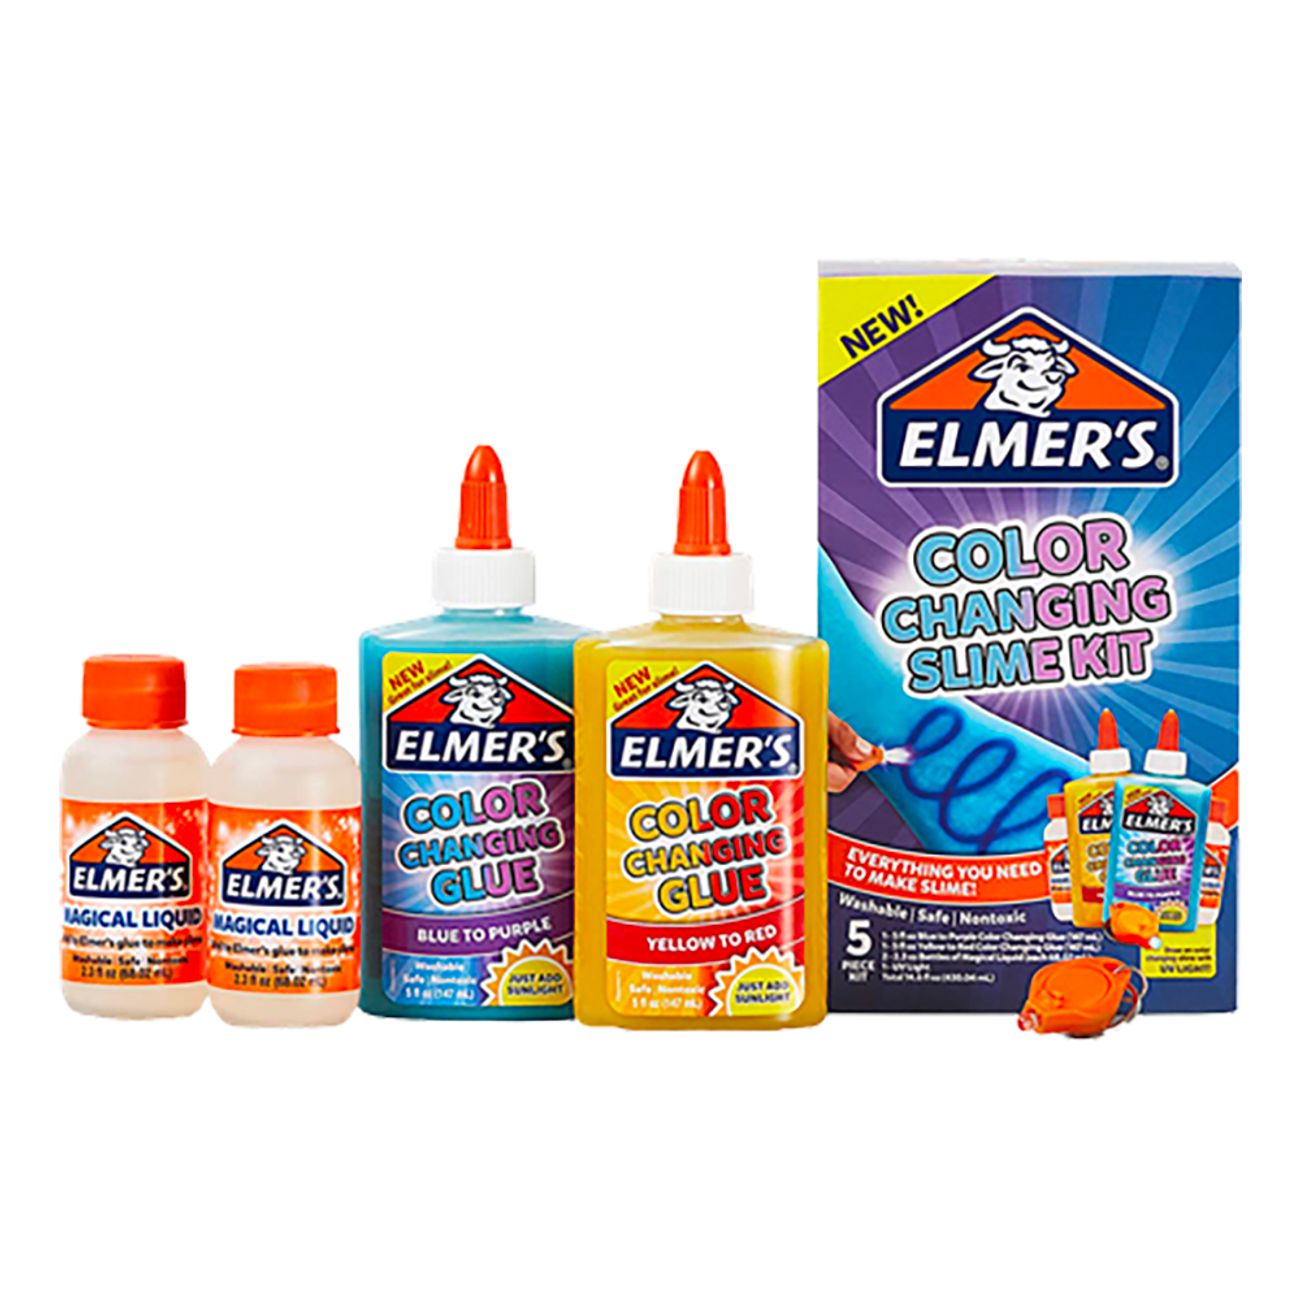 elmers-fargkit-for-slime-84299-1